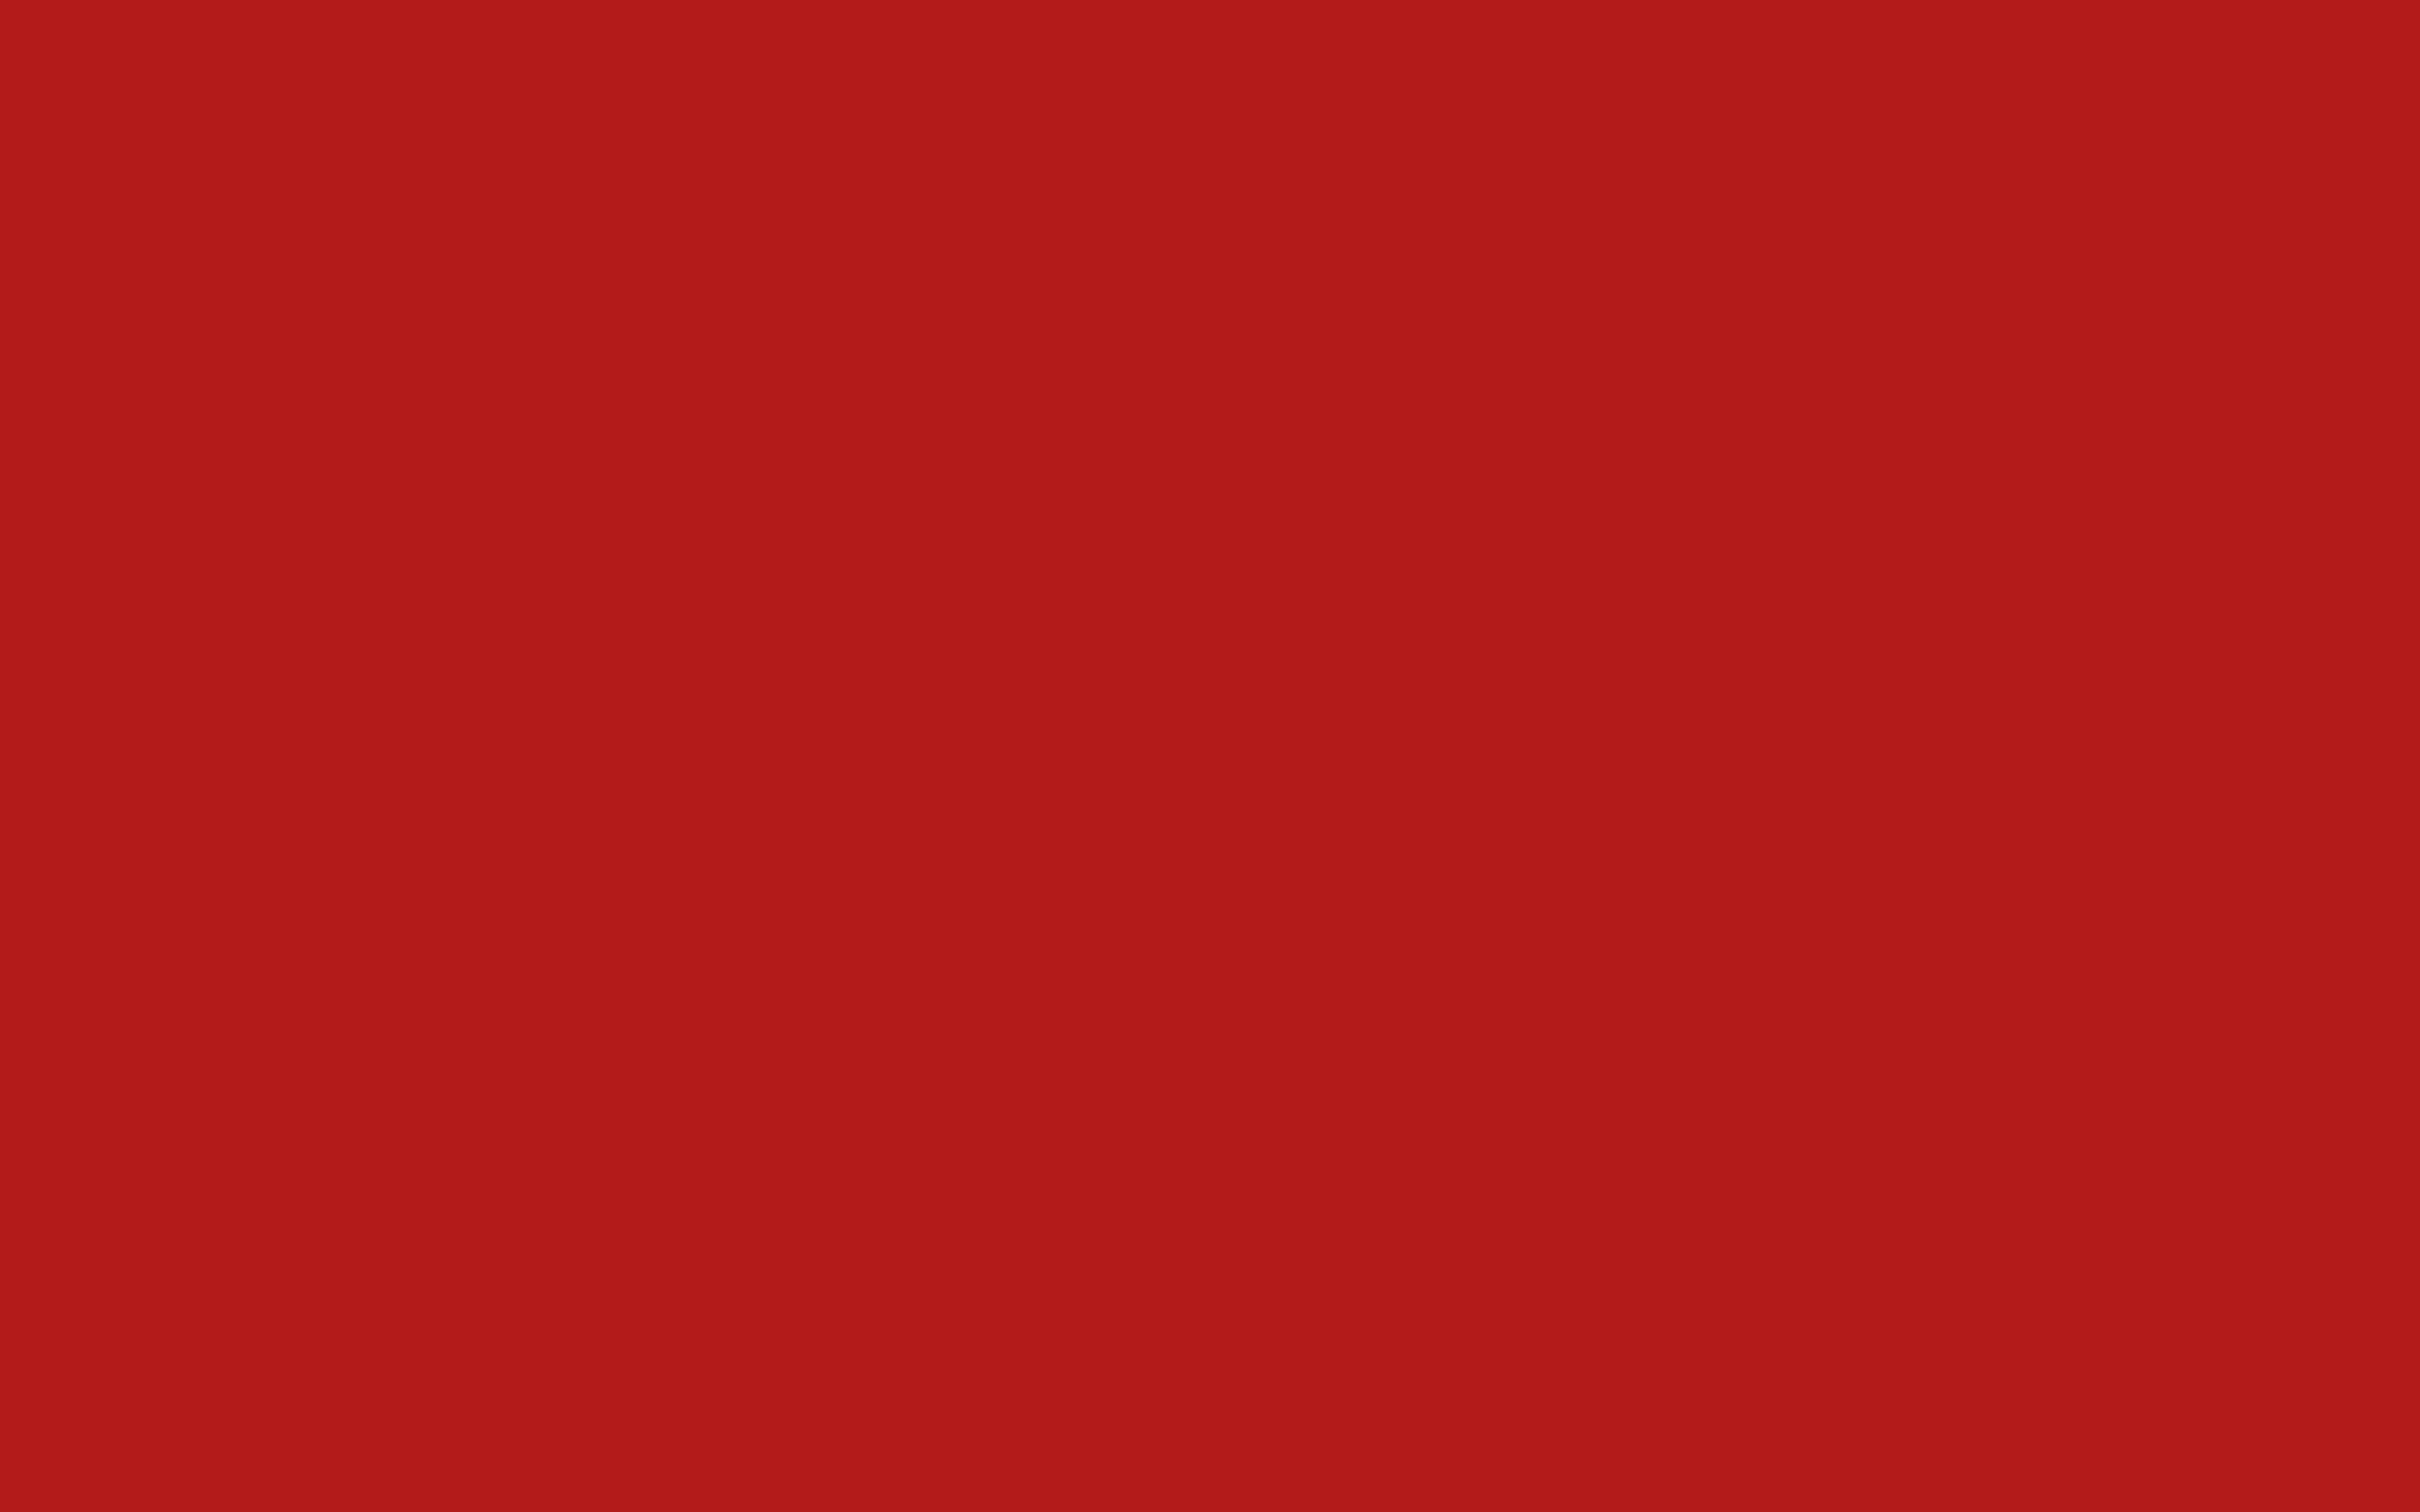 Hình nền gợn sóng màu đỏ trên nền trắng  Thư viện stock vector đẹp miễn phí